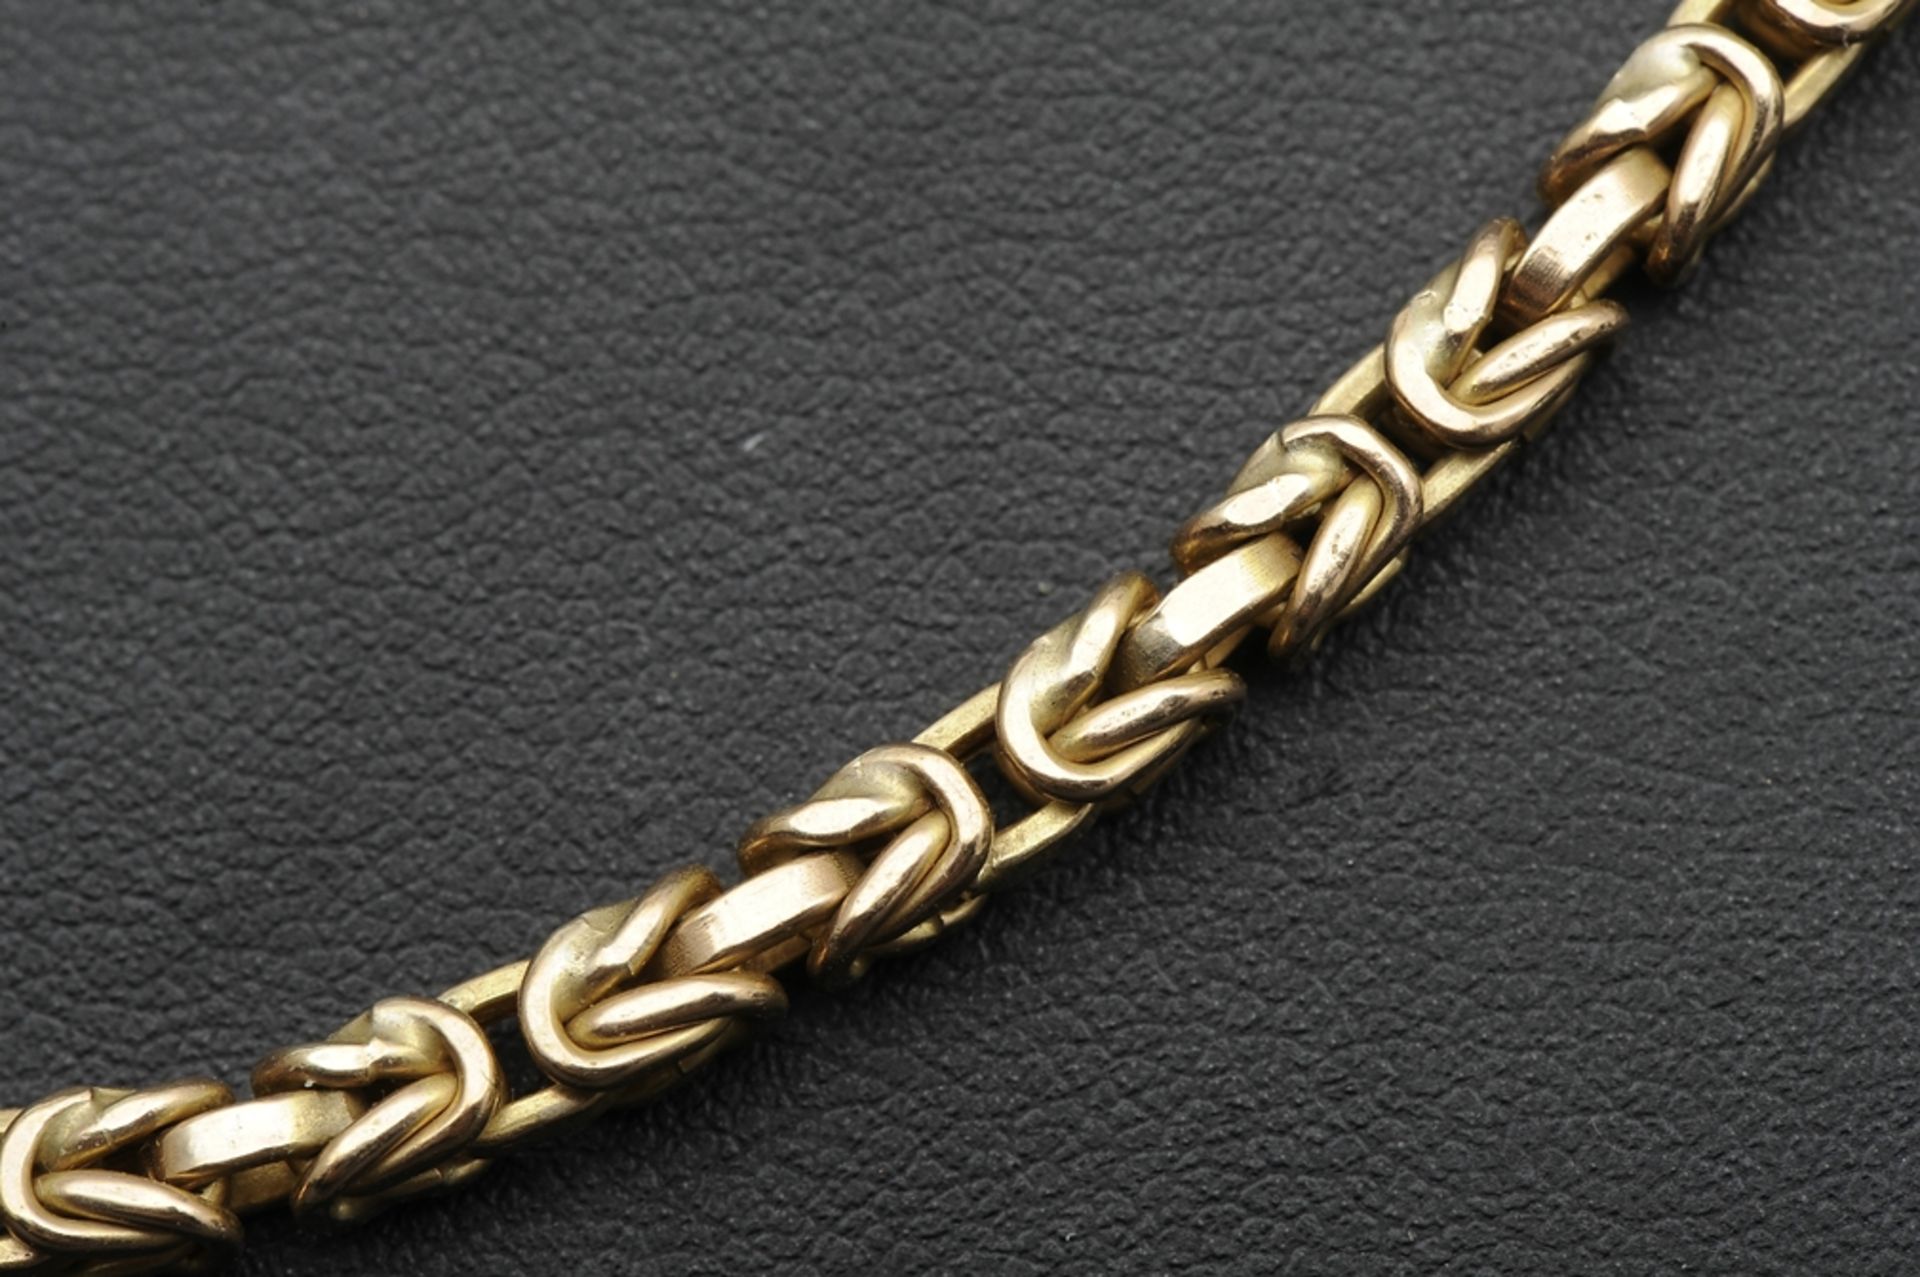 Halskette in 585er Gelbgold, aufwändiger Kettengliederdekor, 1 Stelle leicht aufgebogen, schadhaft. - Image 4 of 9